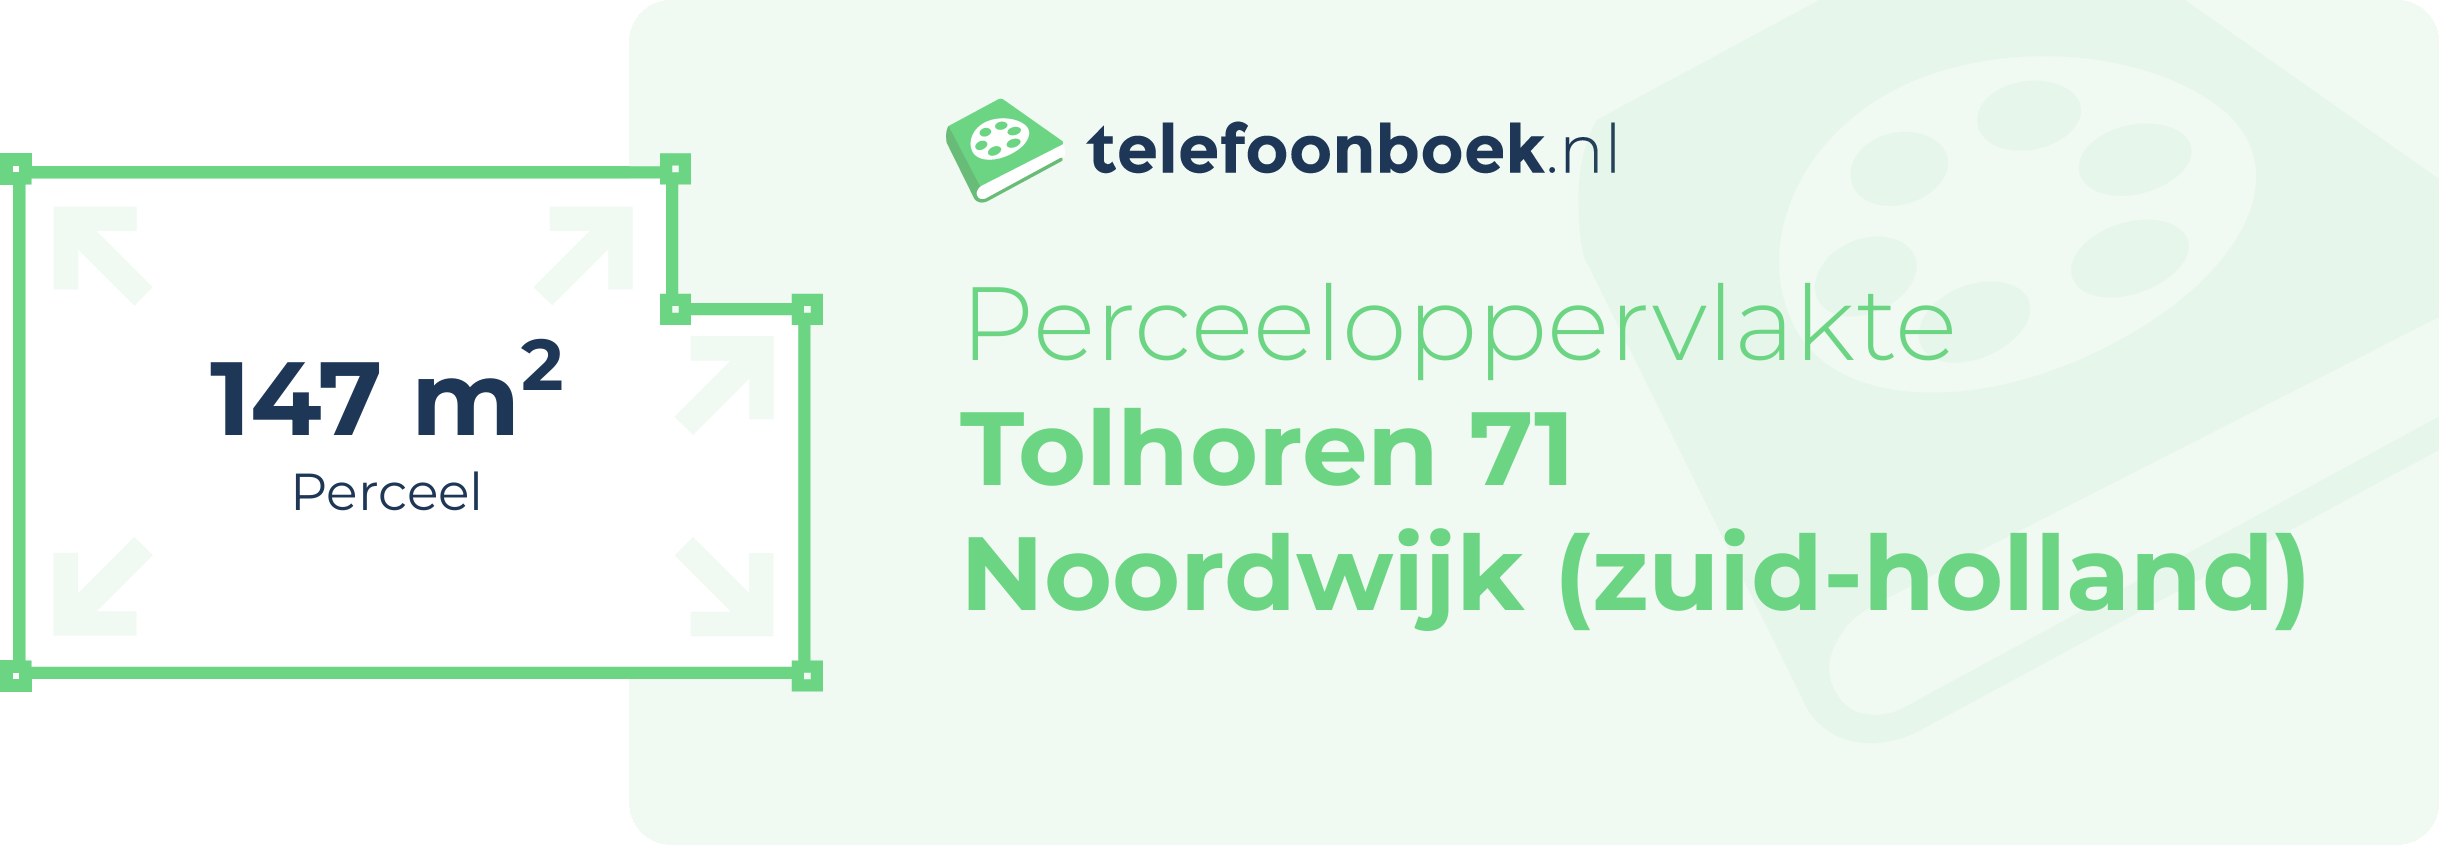 Perceeloppervlakte Tolhoren 71 Noordwijk (Zuid-Holland)